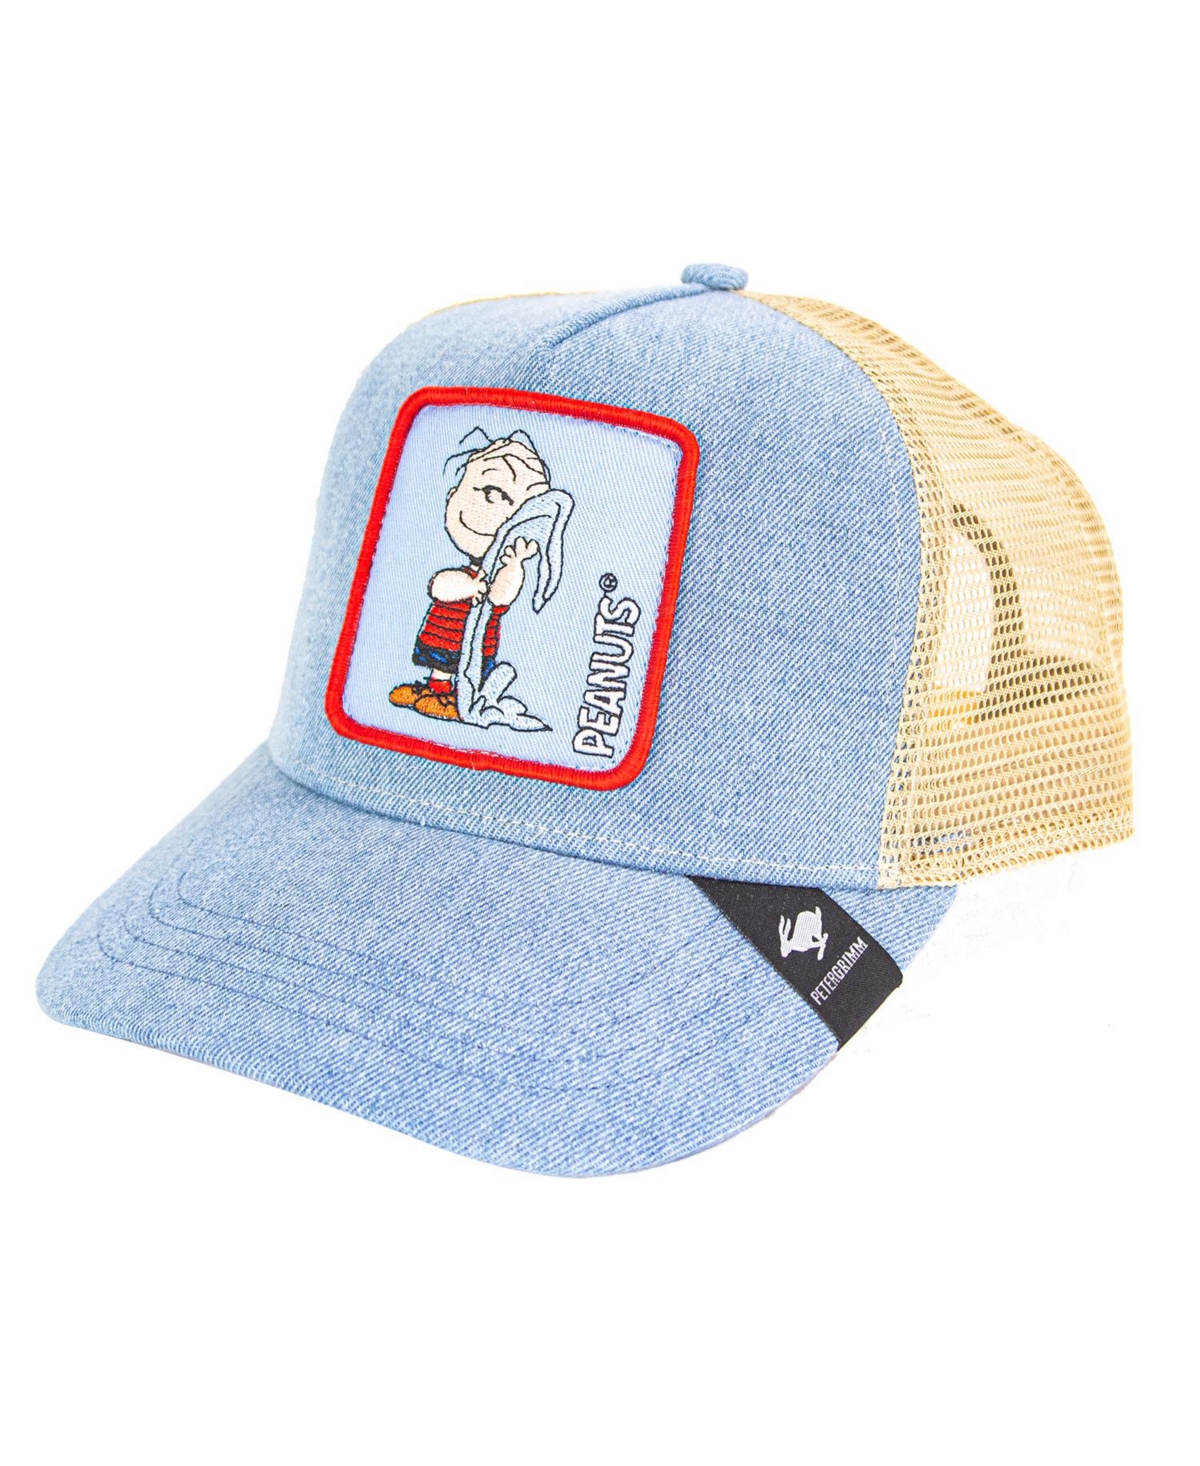 Linus Peanuts Trucker Hat - Denim